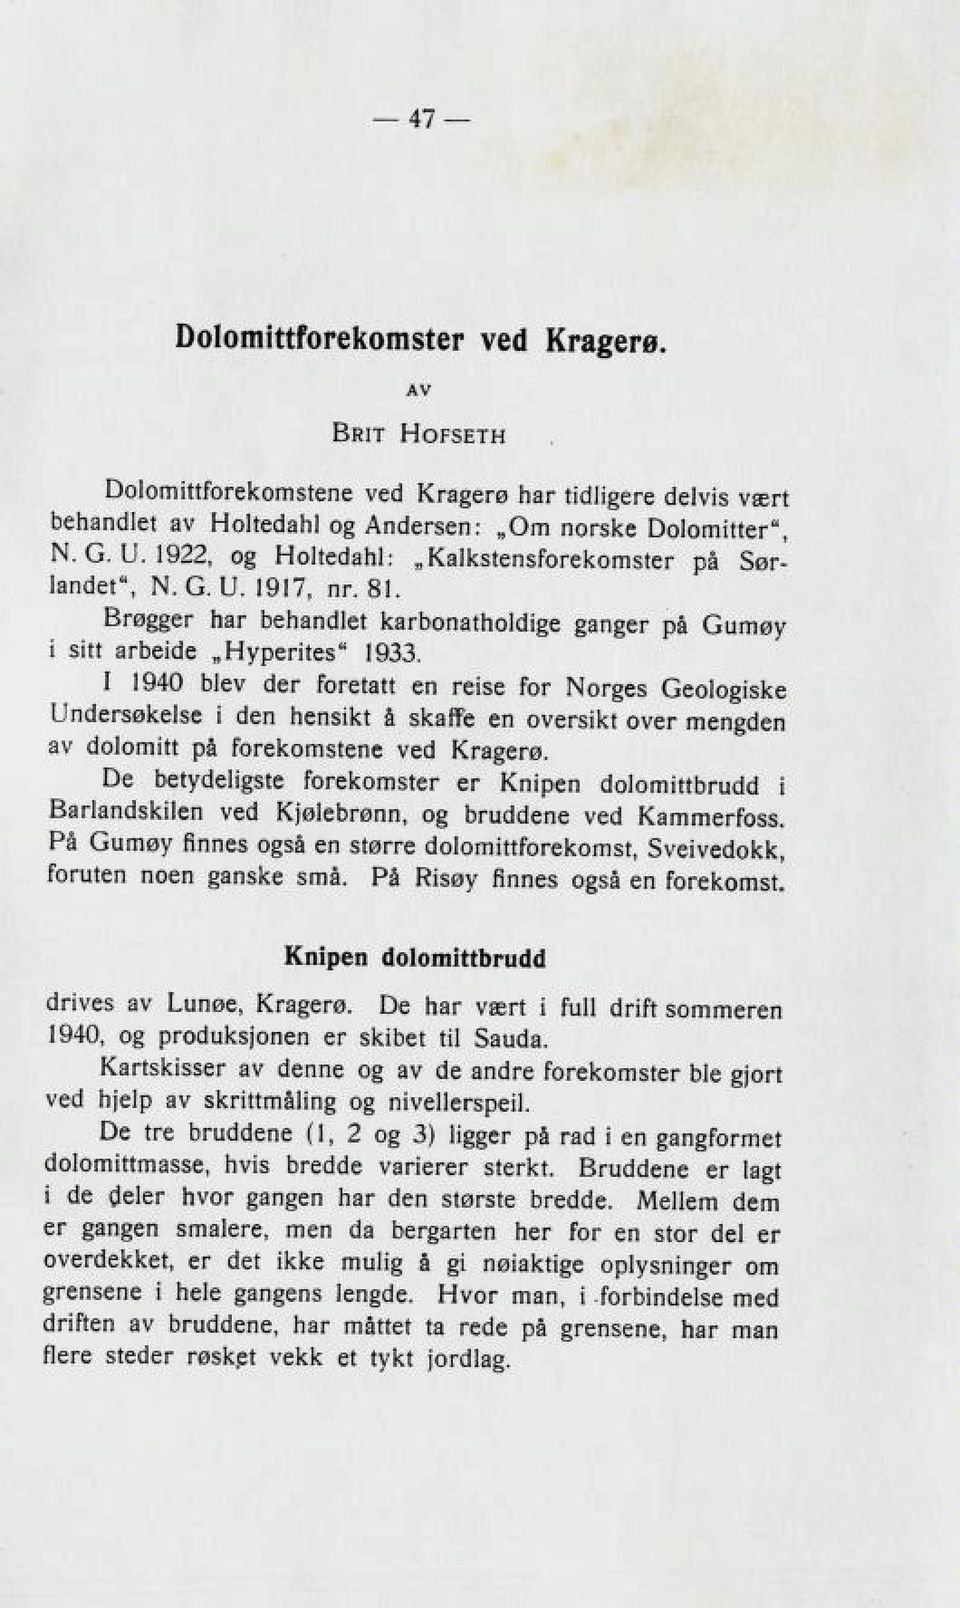 I 1940 blev der foretatt en reise for Norges Geologiske Undersøkelse i den hensikt å skaffe en oversikt over mengden av dolomitt på forekomstene ved Kragerø.